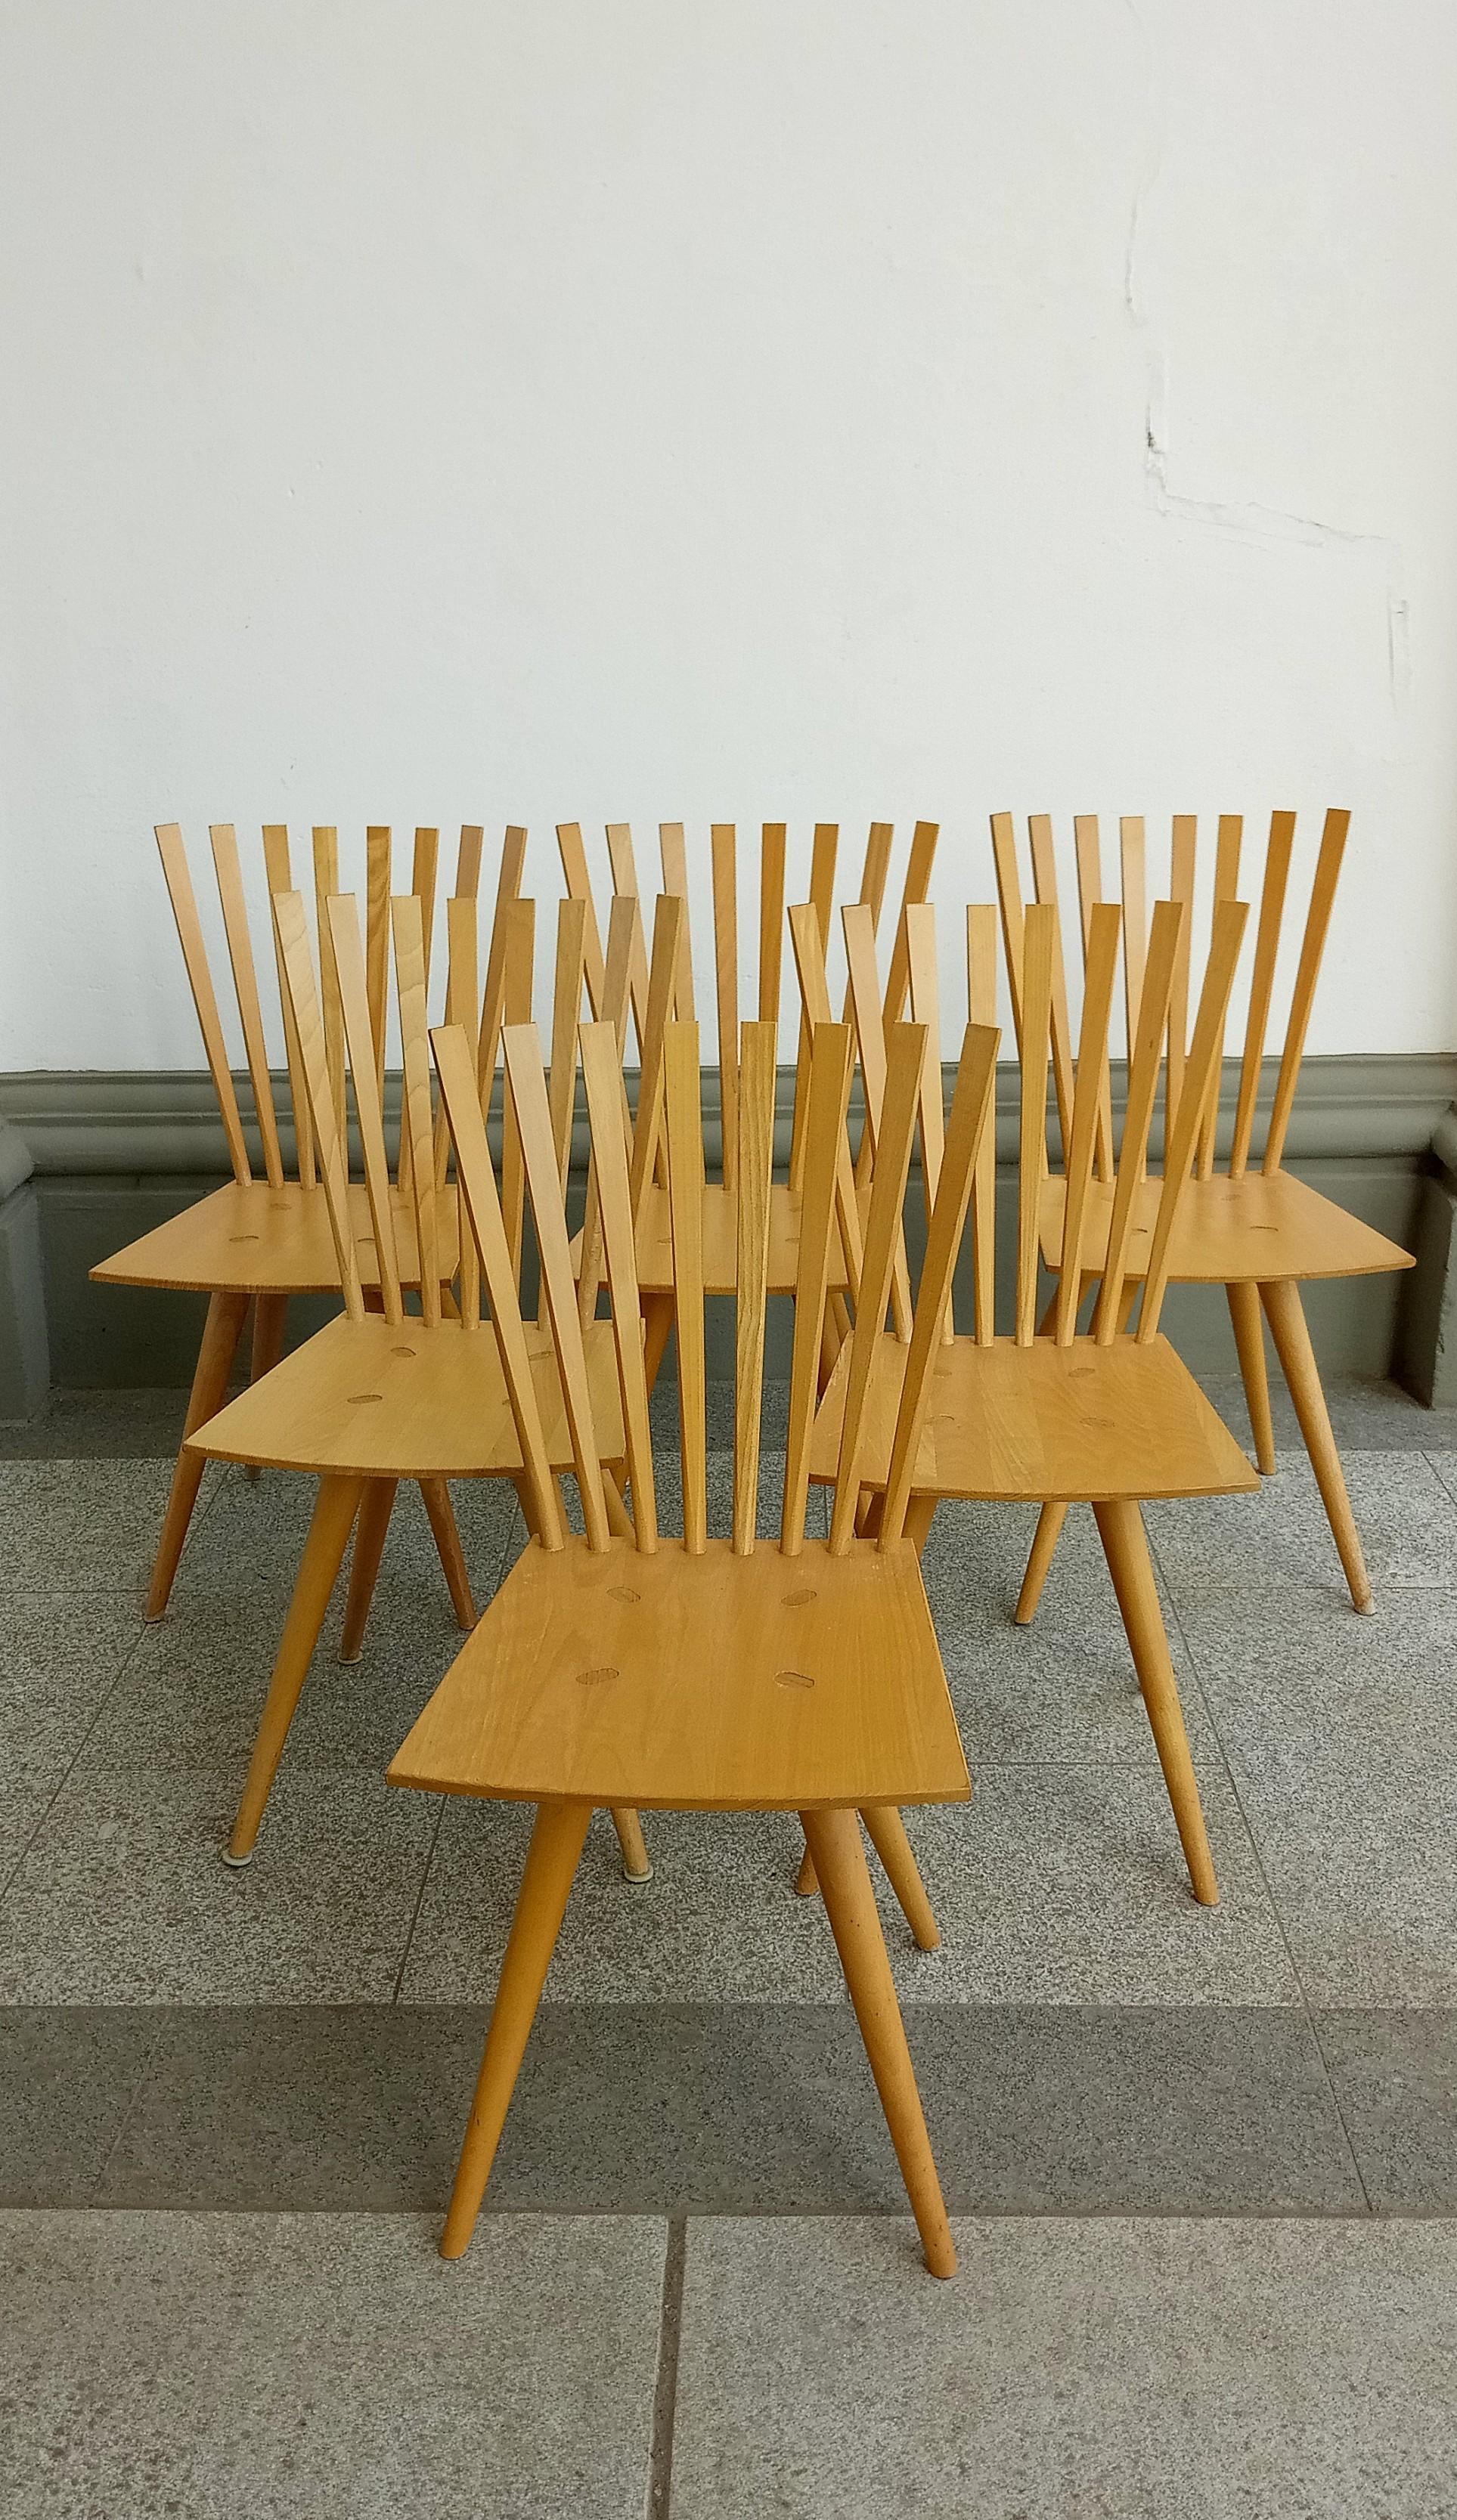 un ensemble de six chaises sculpturales de Foersom & Hiort_Lorenenzen pour Fredericia
en état d'usage. Certaines chaises présentent de petites taches.